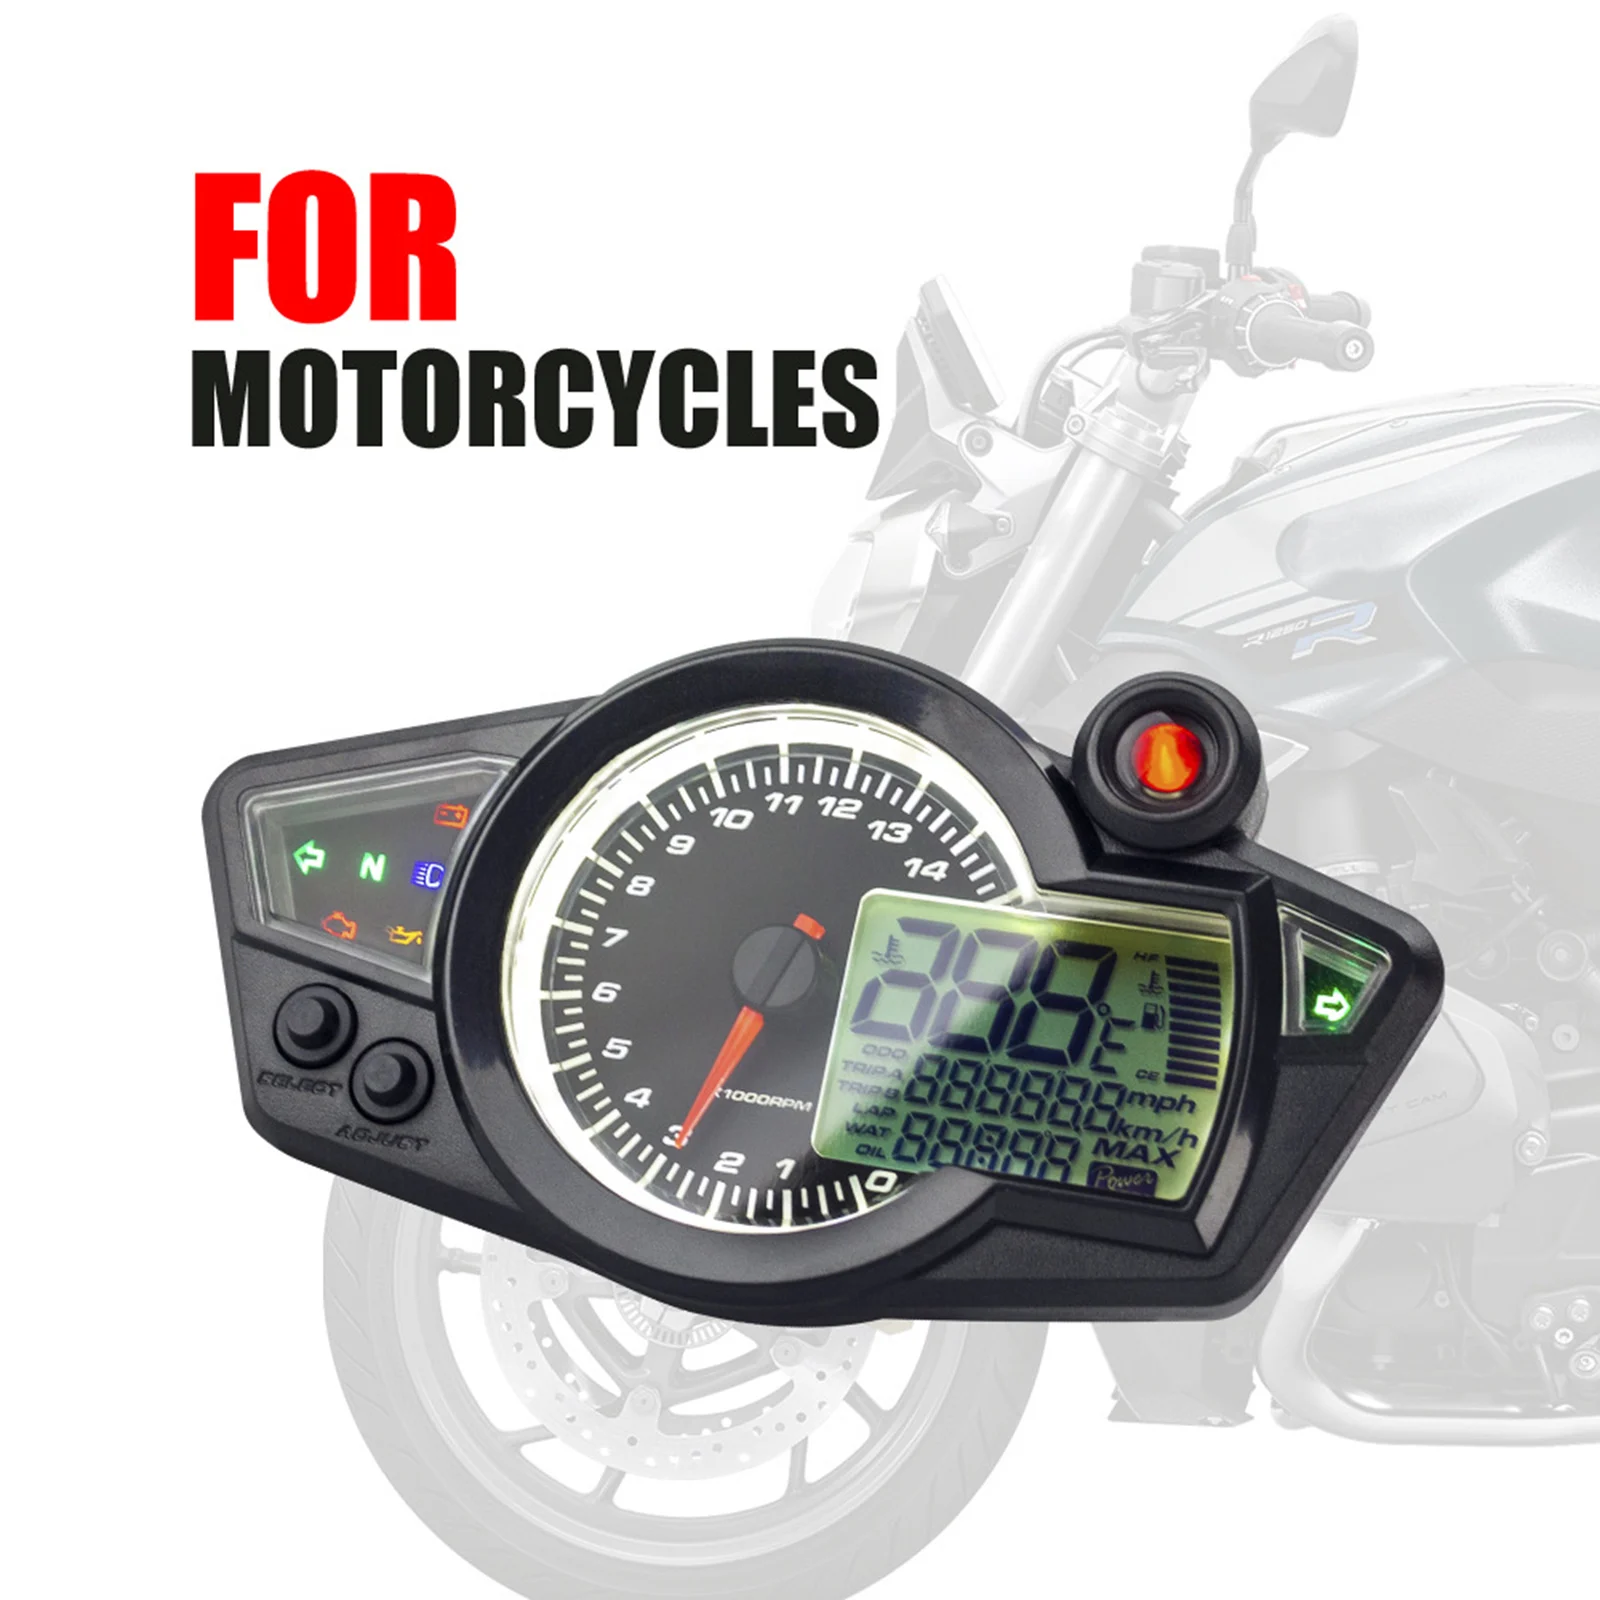 Motorcycle Speedometer Gauge LCD Display Black for Motorbikes Supplies